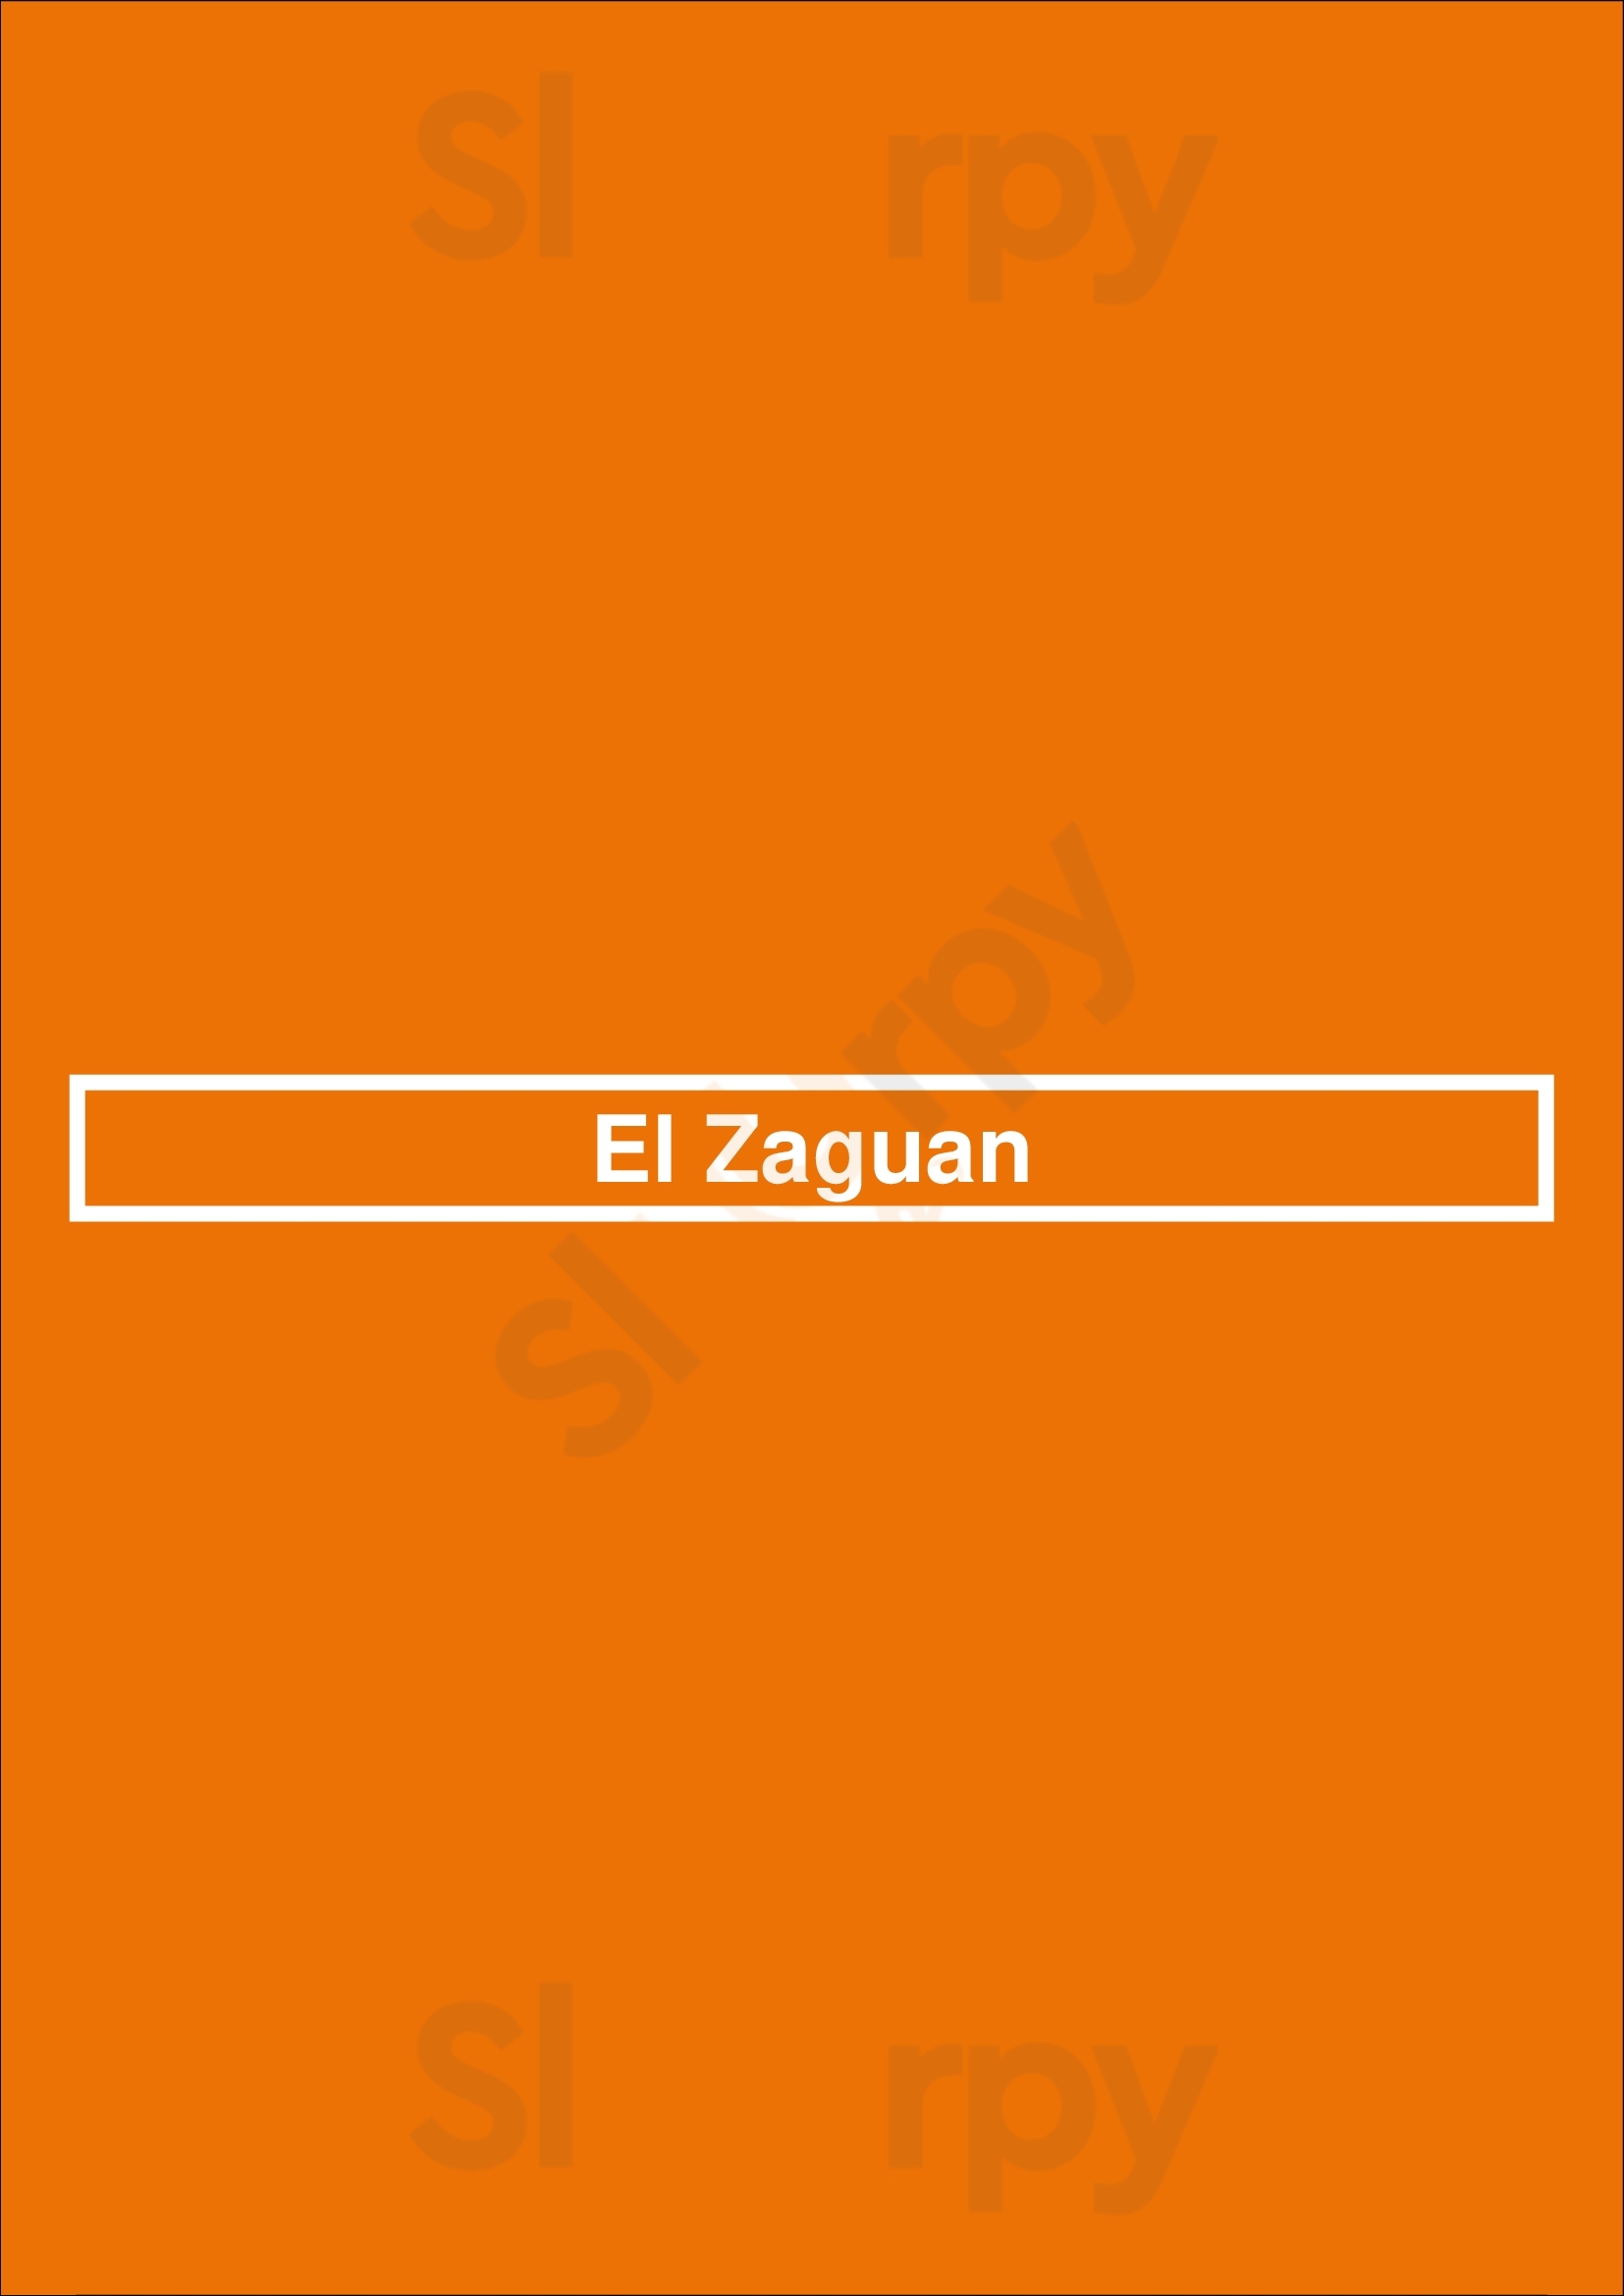 El Zaguan Vilamoura  Menu - 1